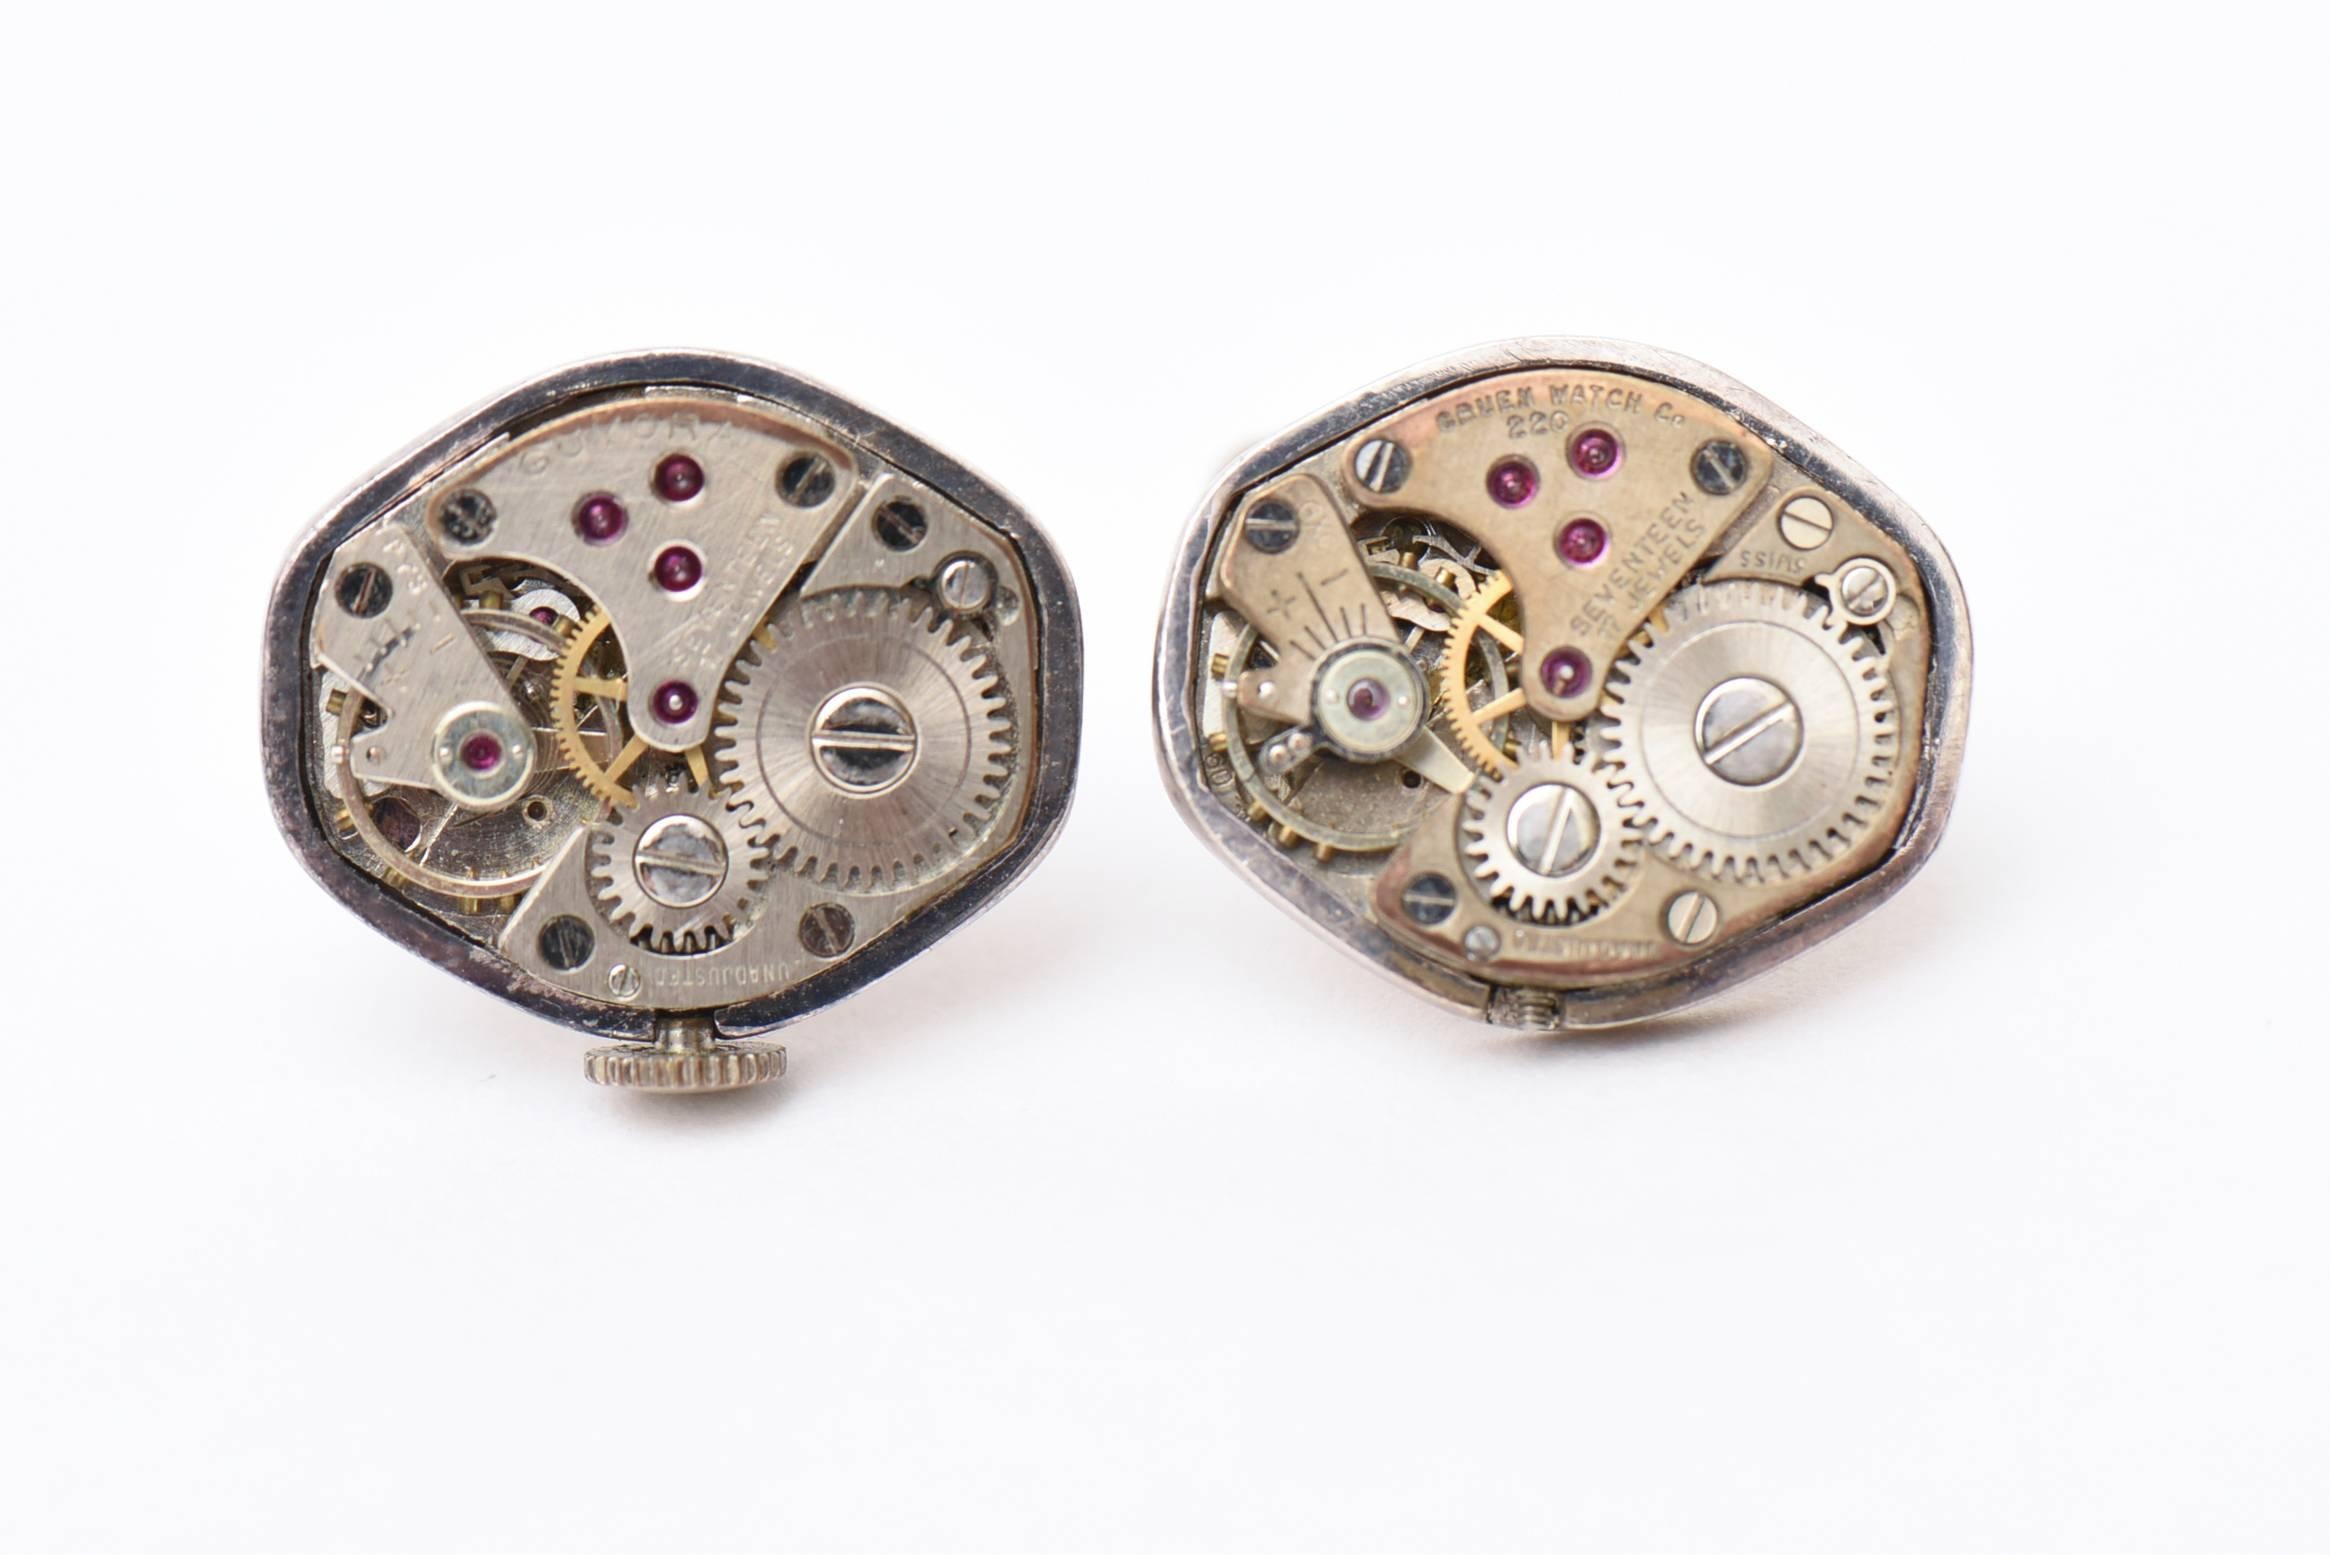 Diese filigranen und beweglichen Uhrenteile faszinieren das Auge. Diese Manschettenknöpfe sind sehr ungewöhnlich und werden von einem Juwelier hergestellt. Sie sind einmalig. Die Herstellung dieser Manschettenknöpfe ist eine faszinierende